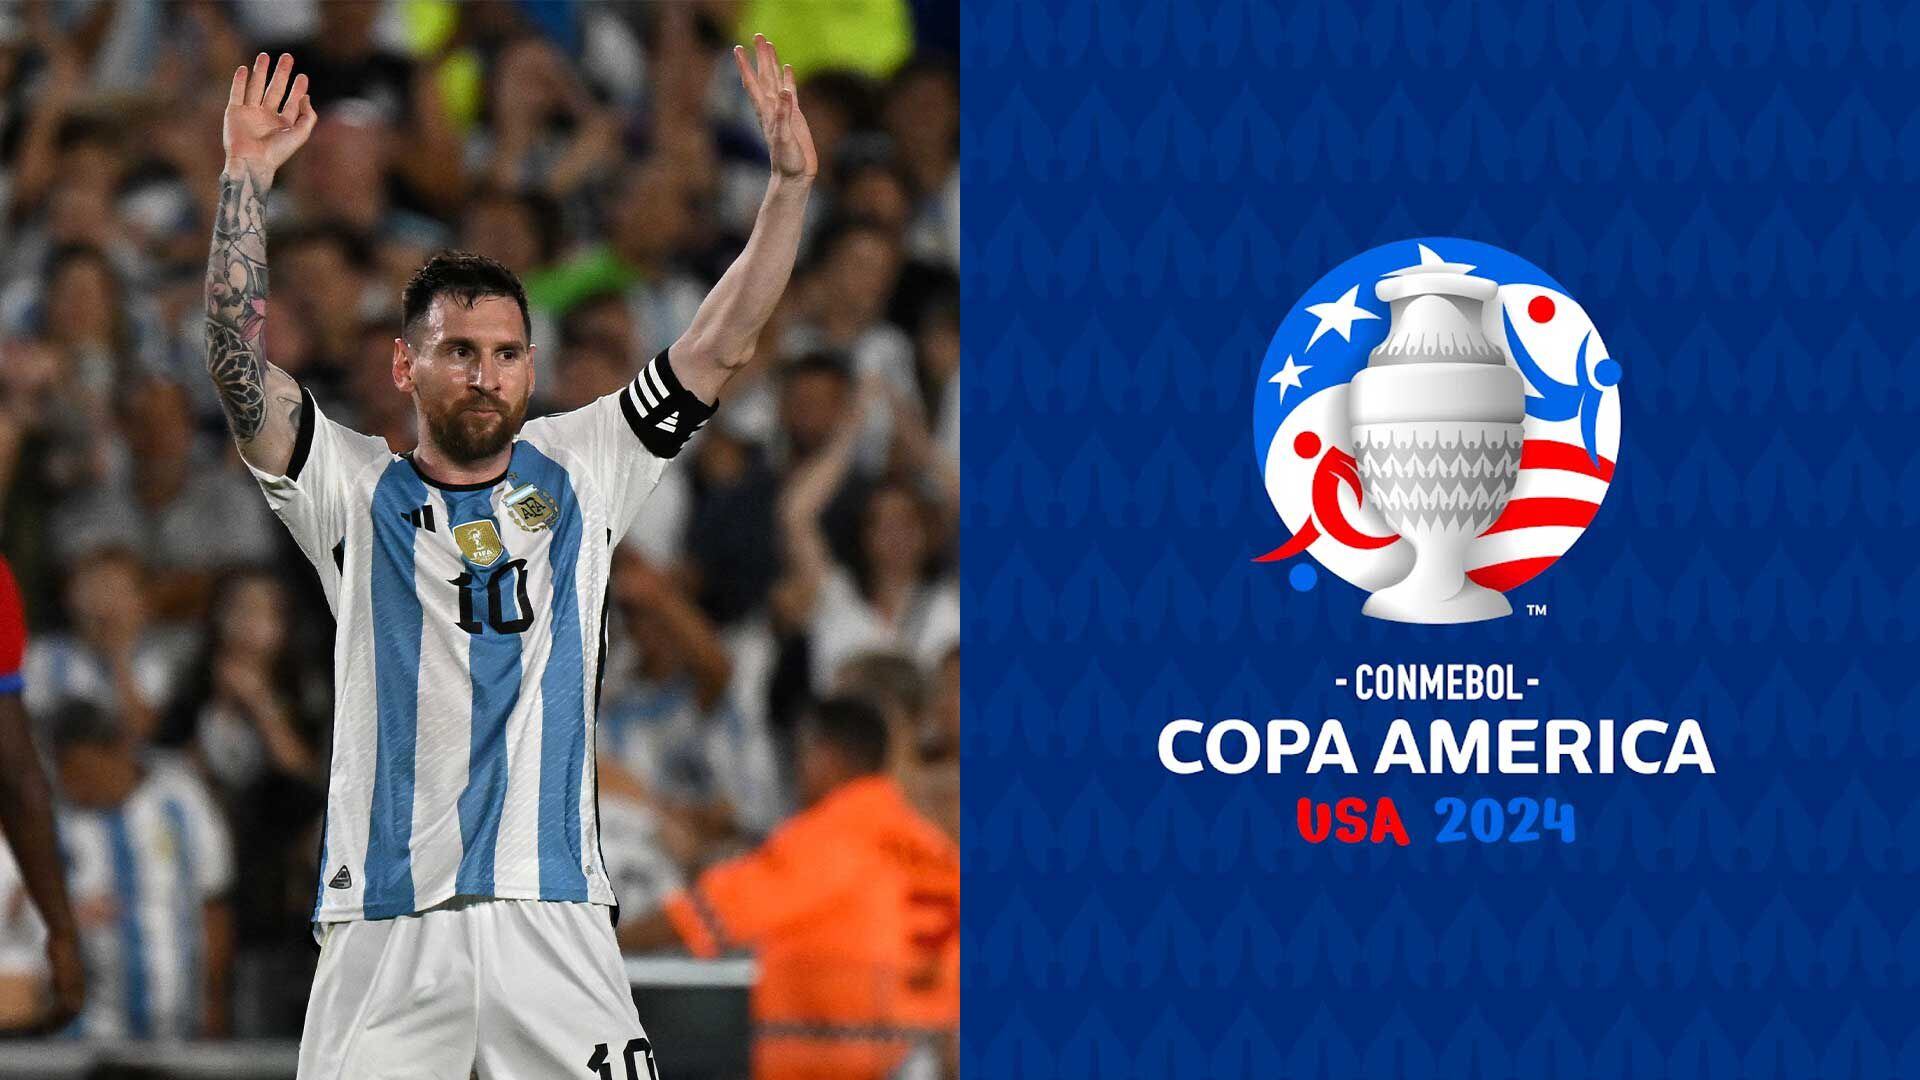 La Copa América 2024 se disputará en Estados Unidos con 16 equipos. Lionel Messi buscará romper récords y Argentina defenderá su título.